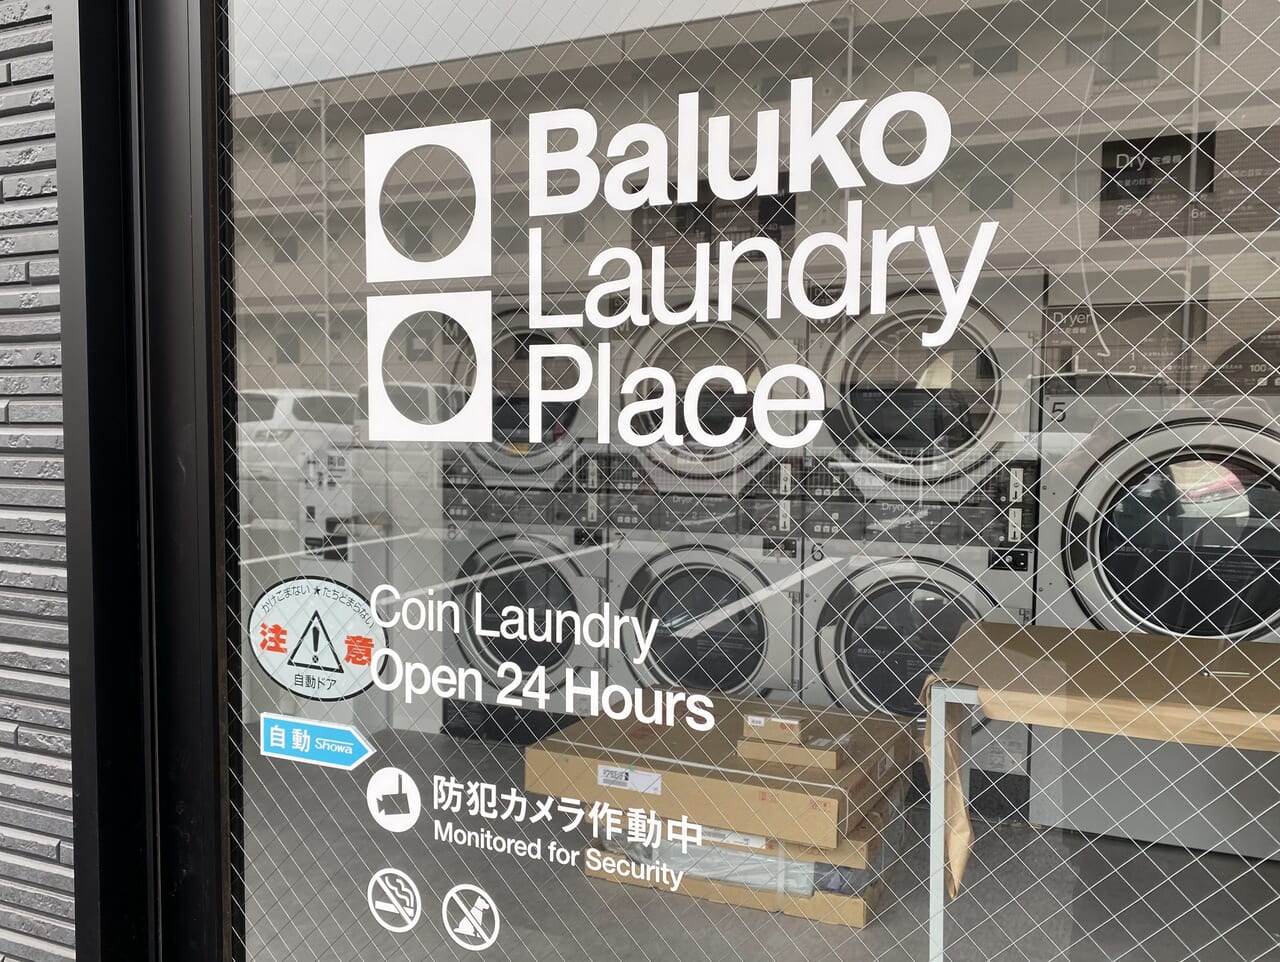 Baluko Laundry Place外観